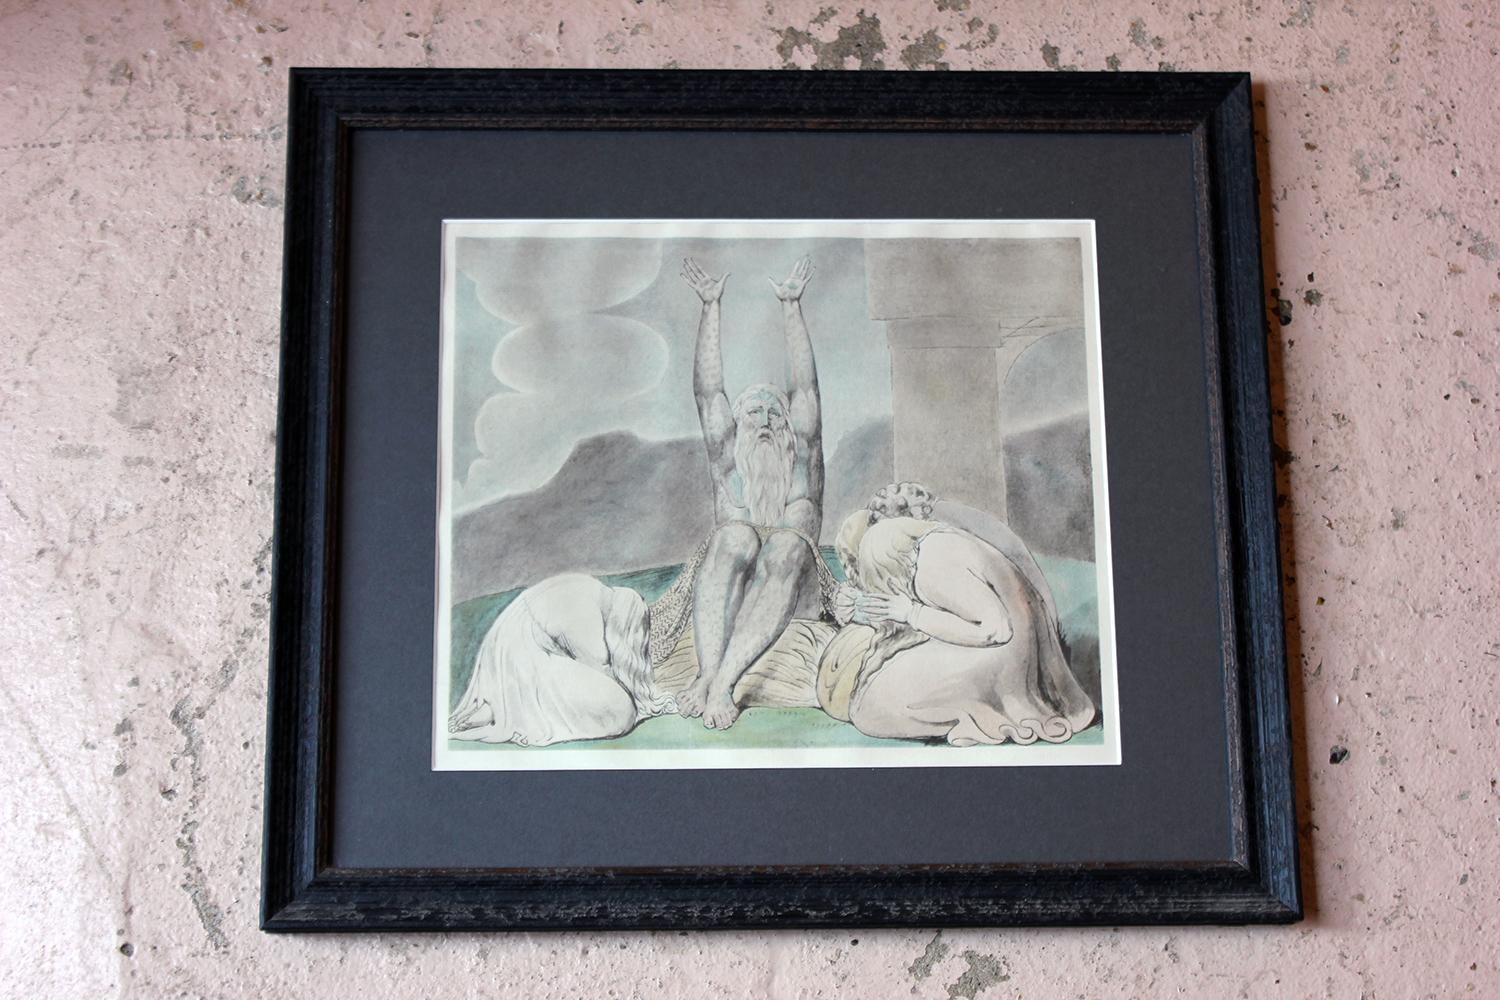 Regency Group of 9 William Blake Artworks, 6 Engravings & 3 Watercolors